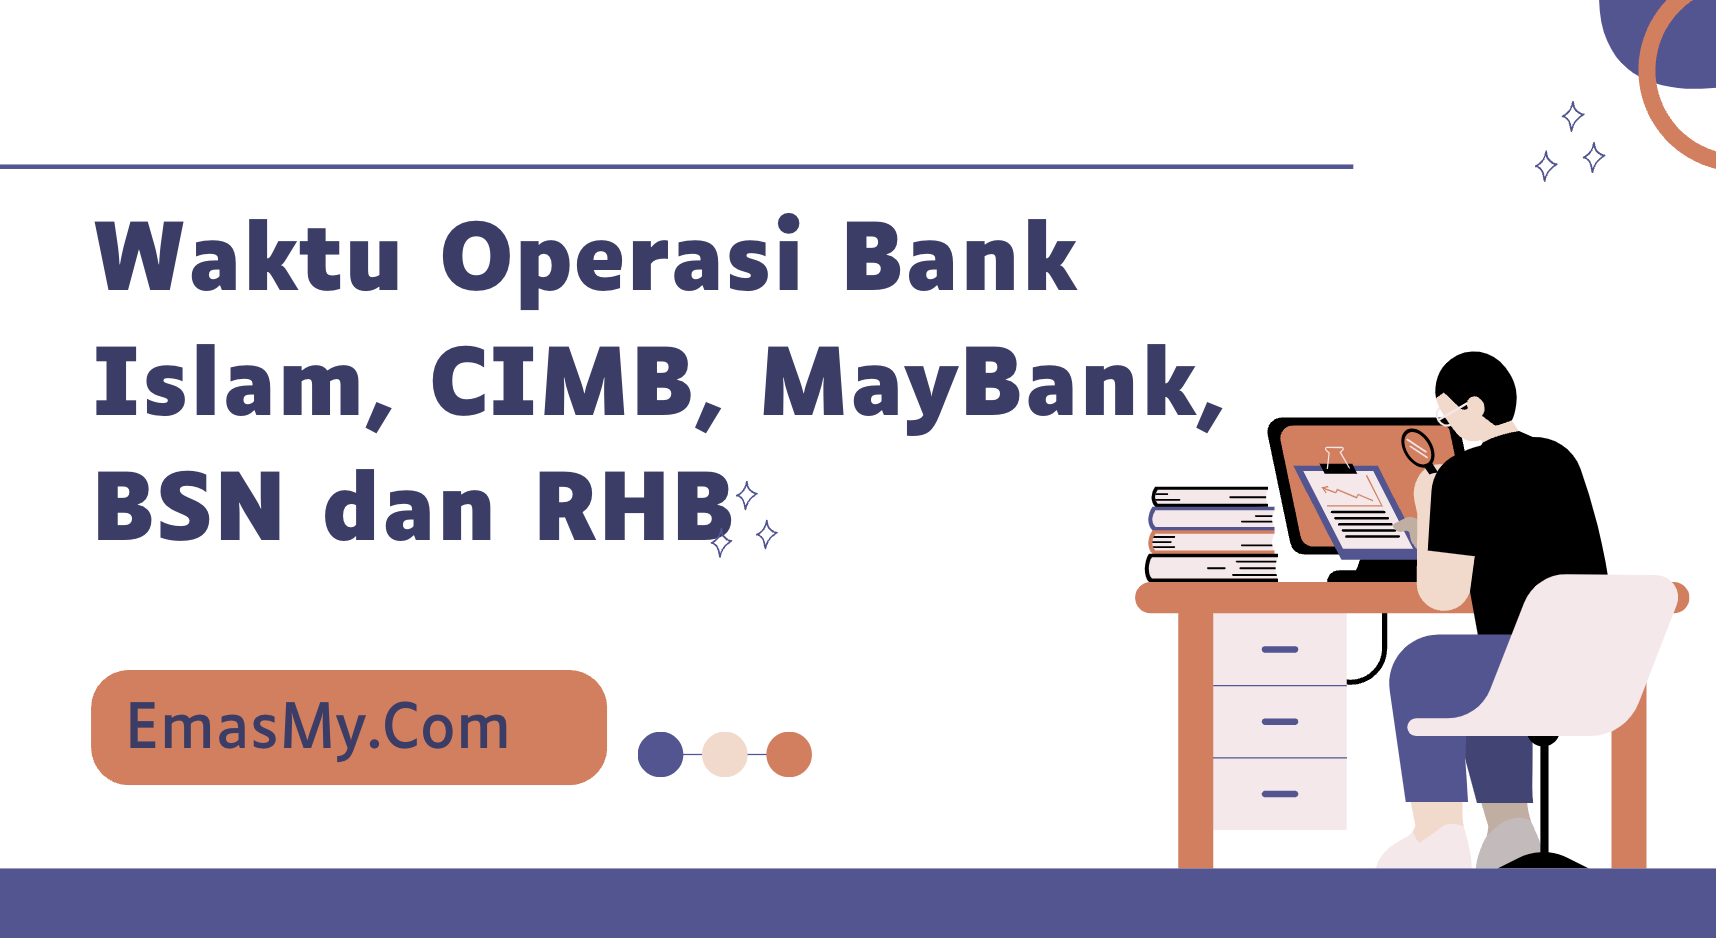 Waktu Operasi Bank Islam, CIMB, MayBank, BSN dan RHB